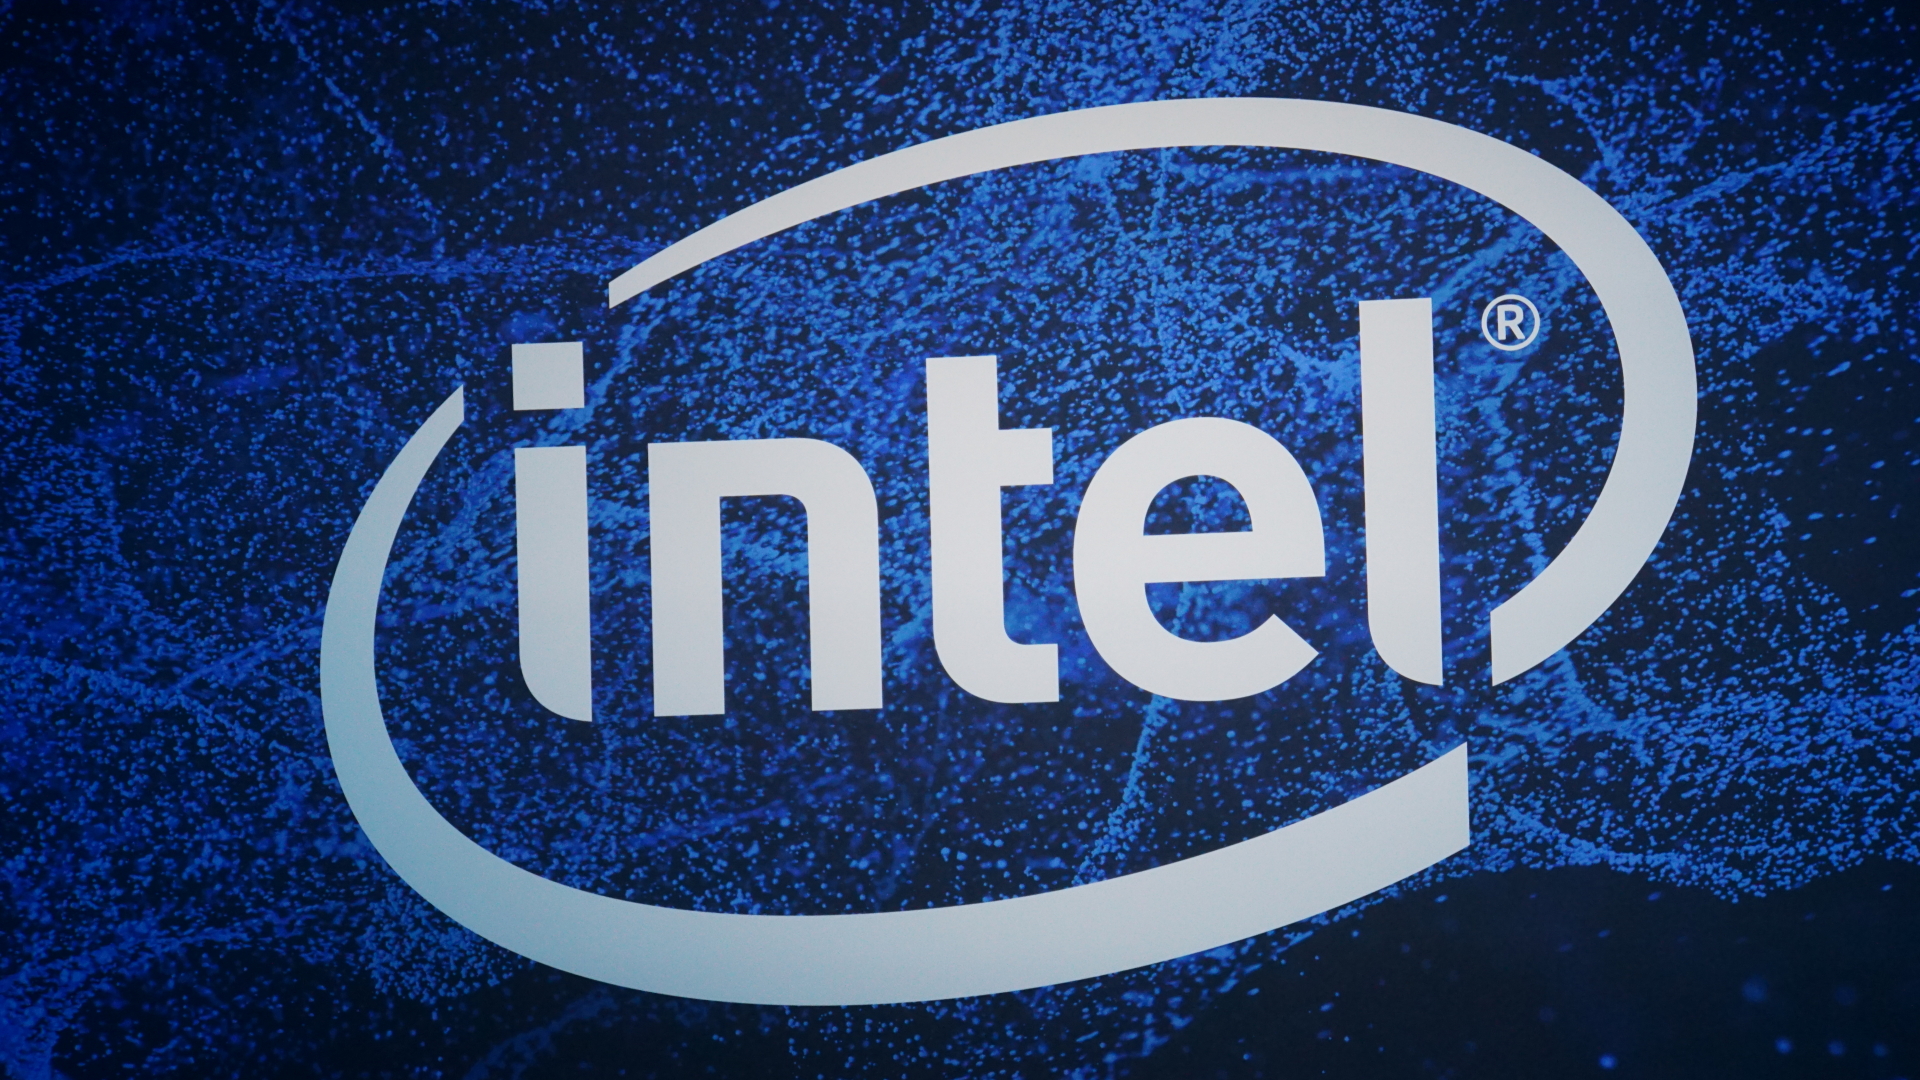 Intel công bố các phát kiến công nghệ ở lĩnh vực điện toán hiệu năng cao